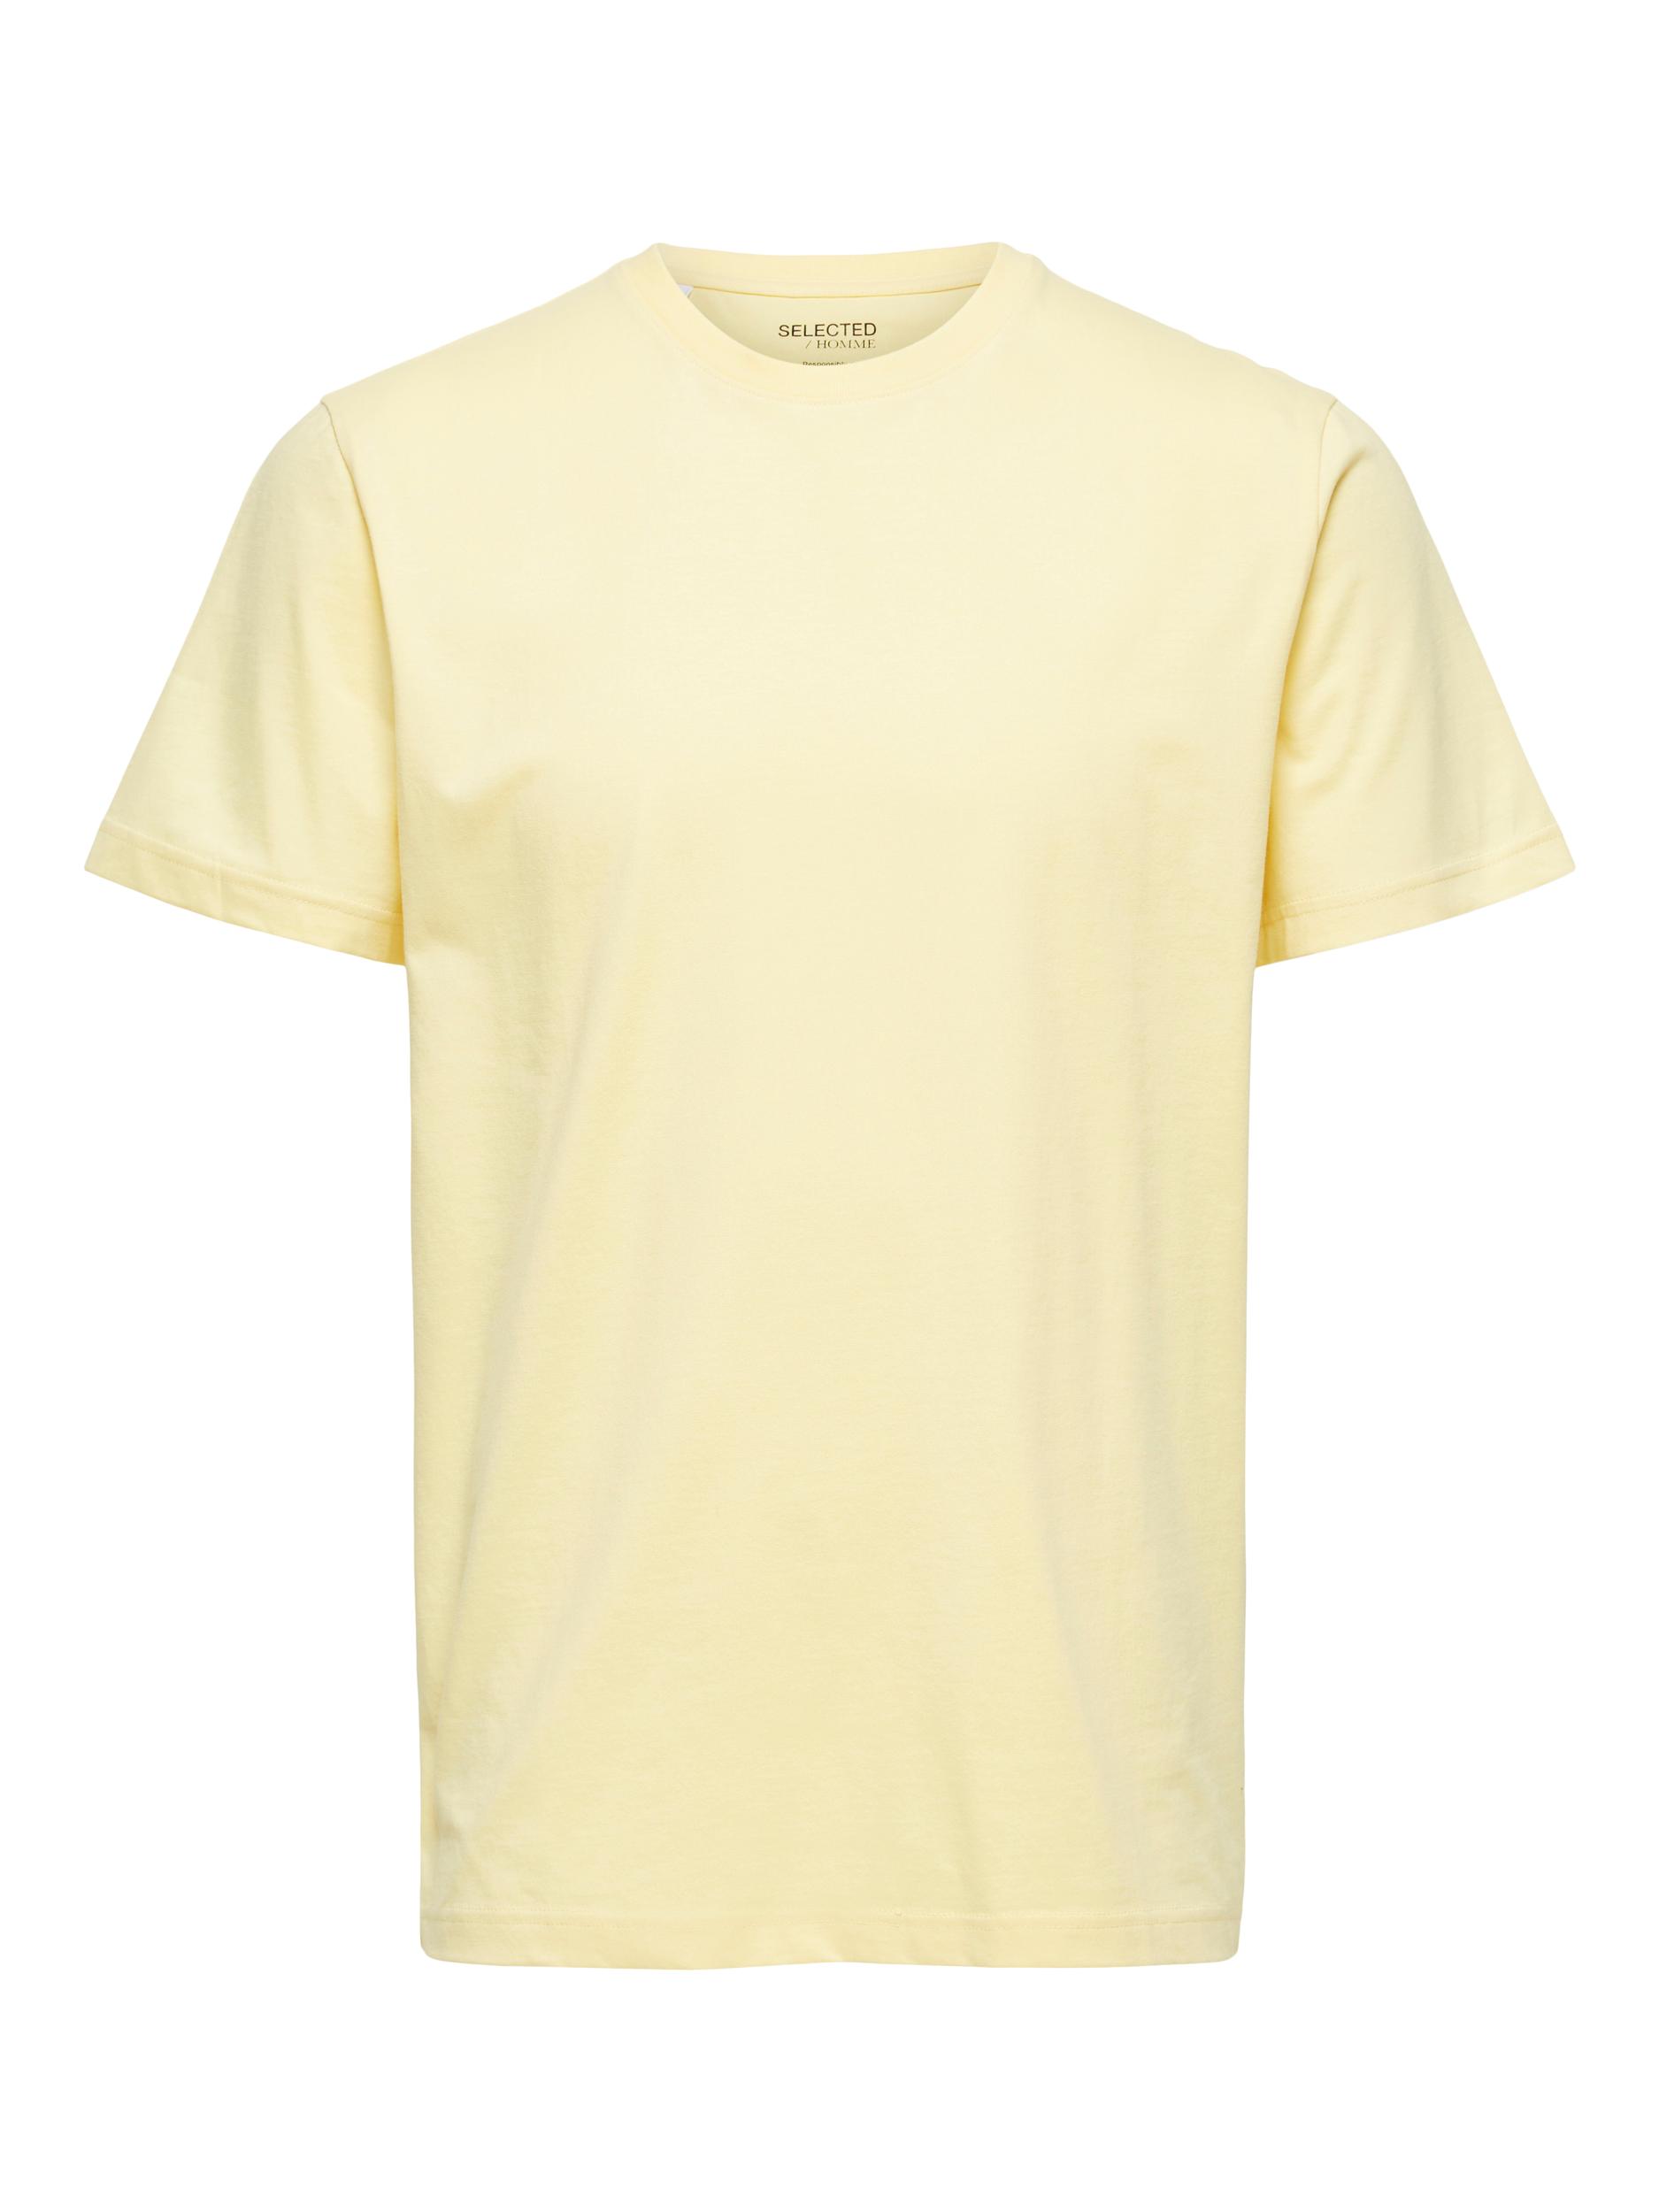  Norman T-shirt, Sunlight, M